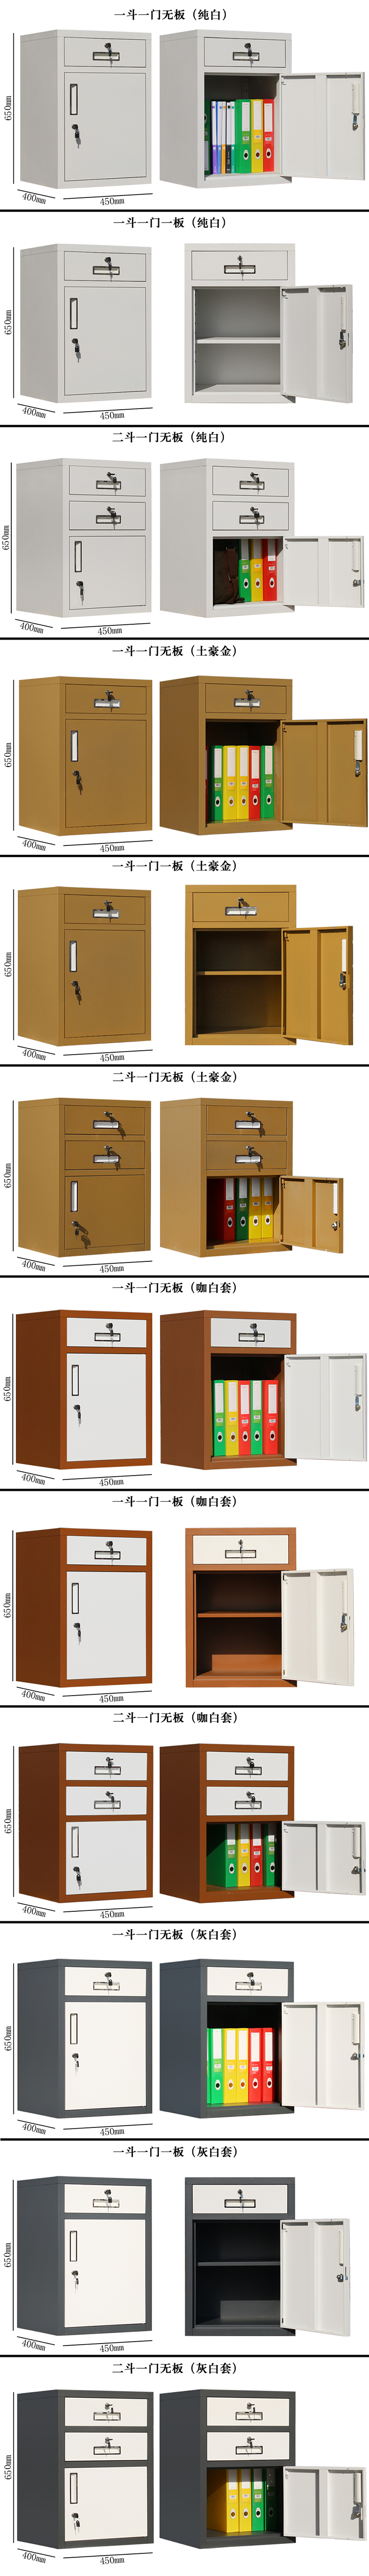 Nam Kinh văn phòng nội thất tủ hồ sơ hoạt động lưu trữ tủ ngắn tủ hồ sơ điện thoại di động với khóa ba ngăn kéo